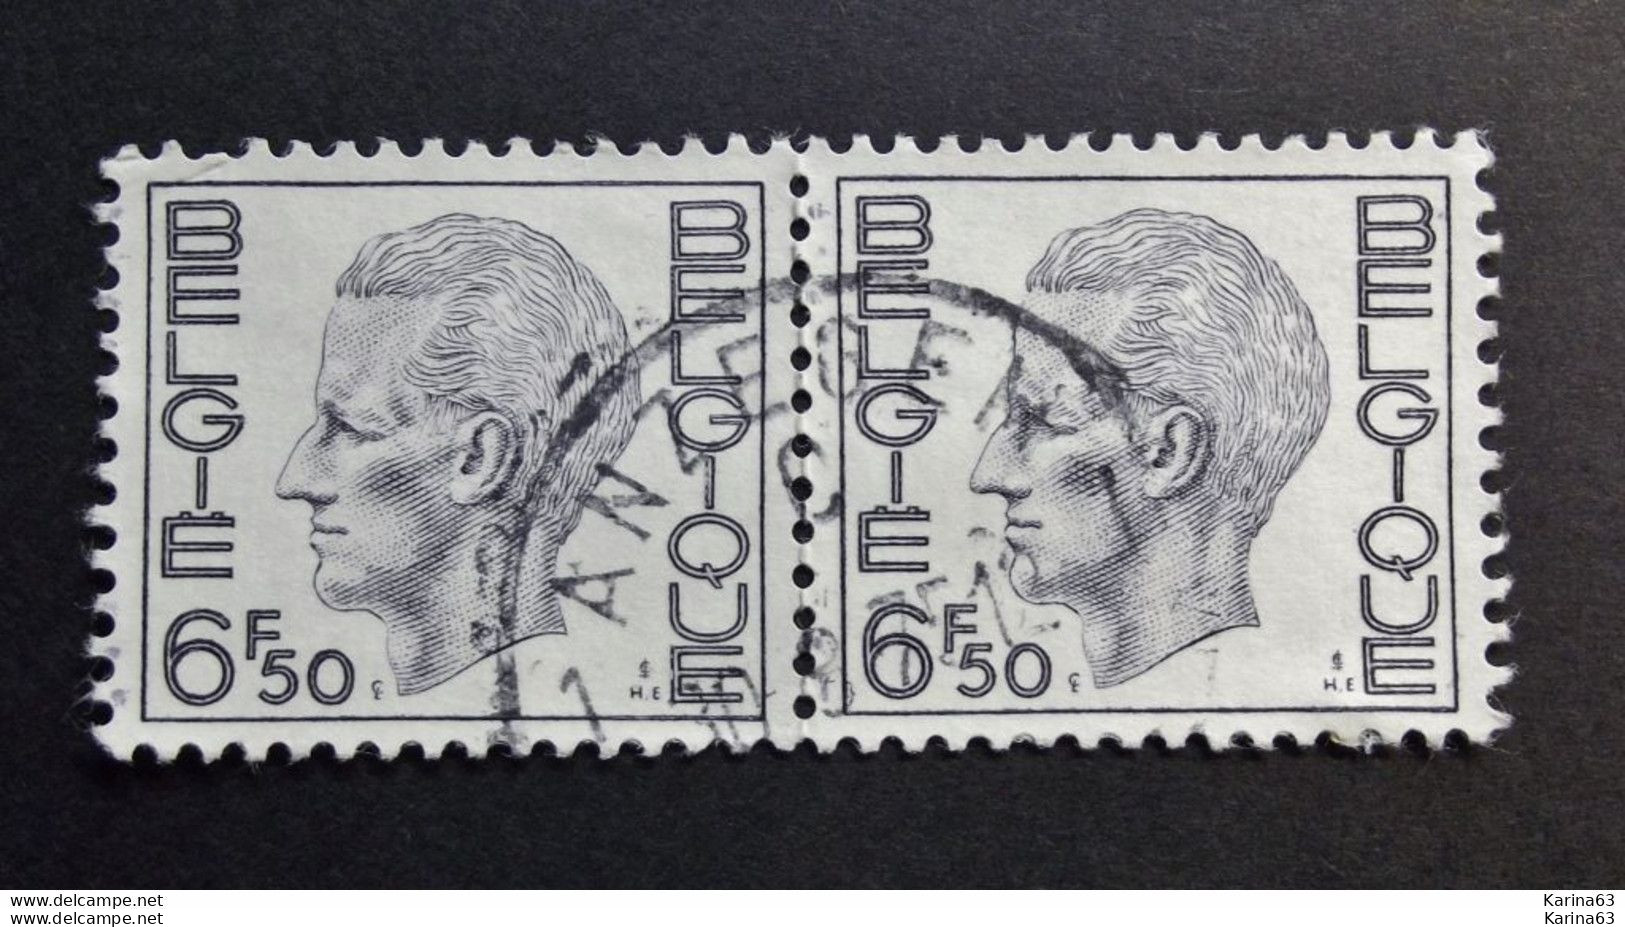 Belgie Belgique - 1974 - OPB/COB N° 1744  ( 2 Values ) Koning Boudewijn Type Elstrom  Obl. Anzegem - Used Stamps